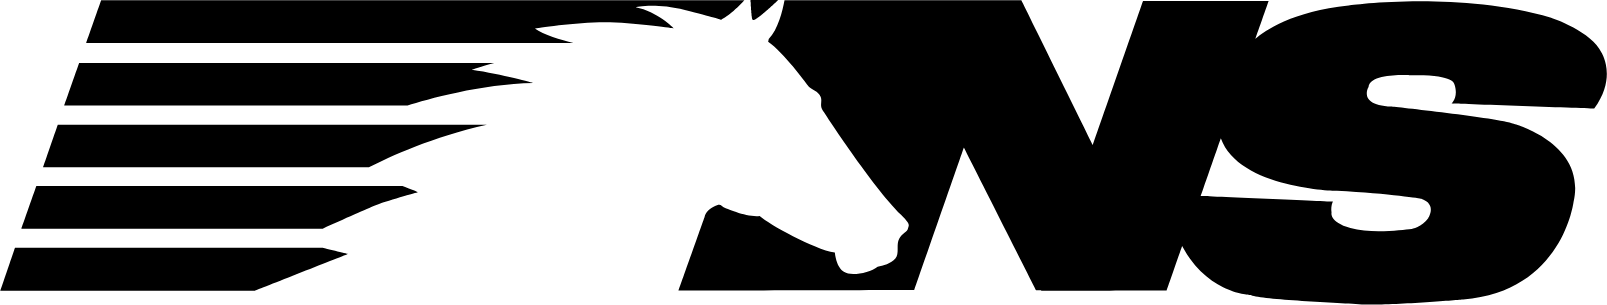 Norfolk Southern logo (transparent PNG)